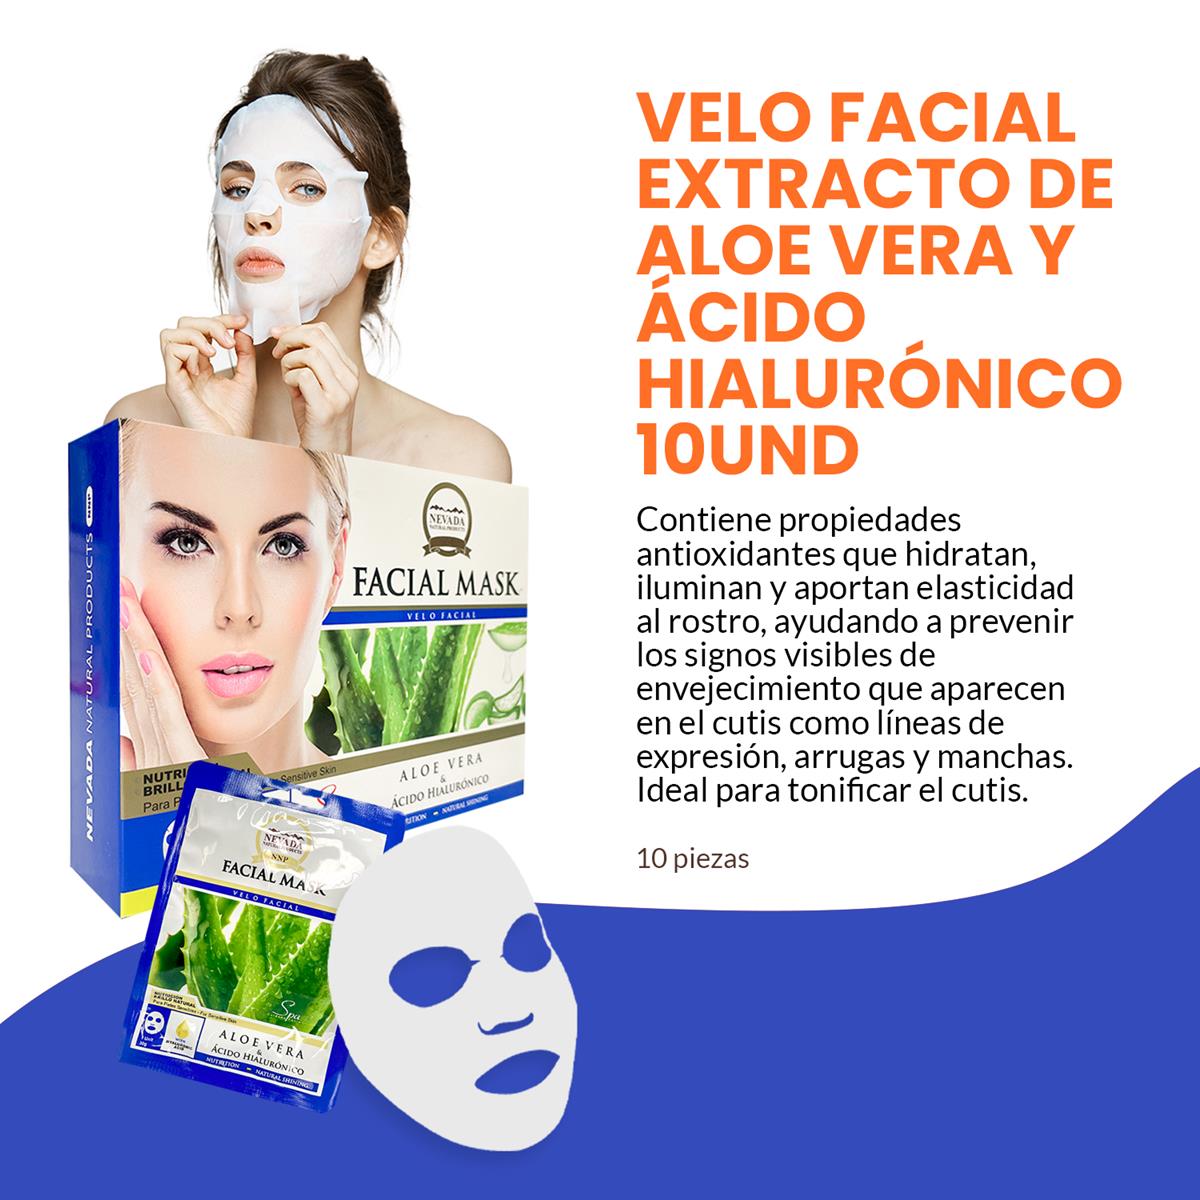 Velo facial extracto de aloe vera y ácido hialurónico 10unid